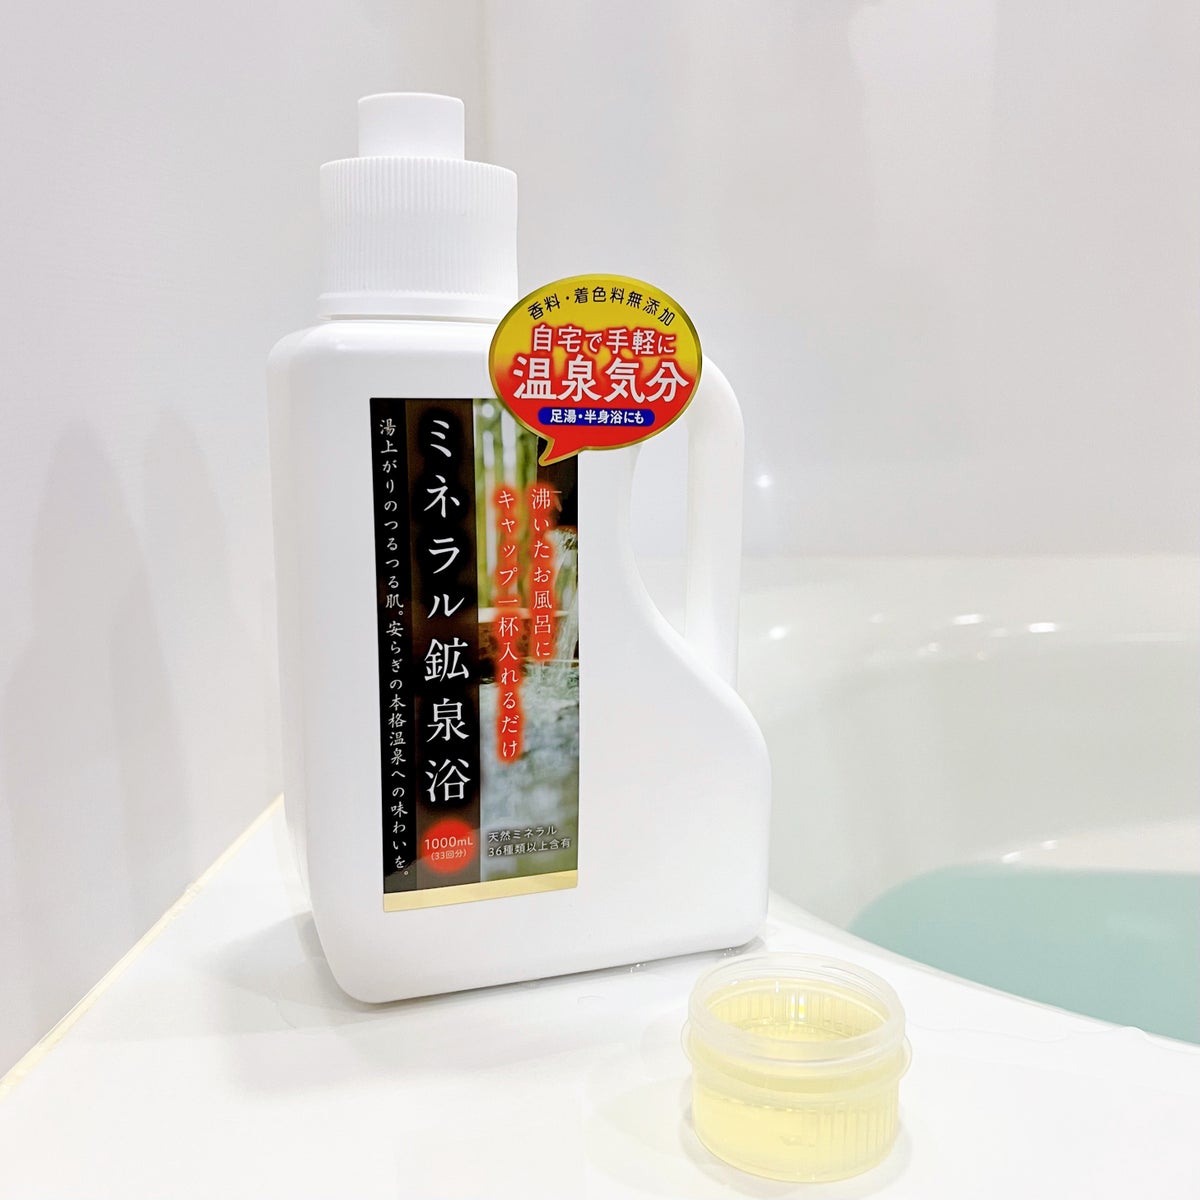 鉱泉浴 ミネラル 入浴剤 - 入浴剤・バスソルト